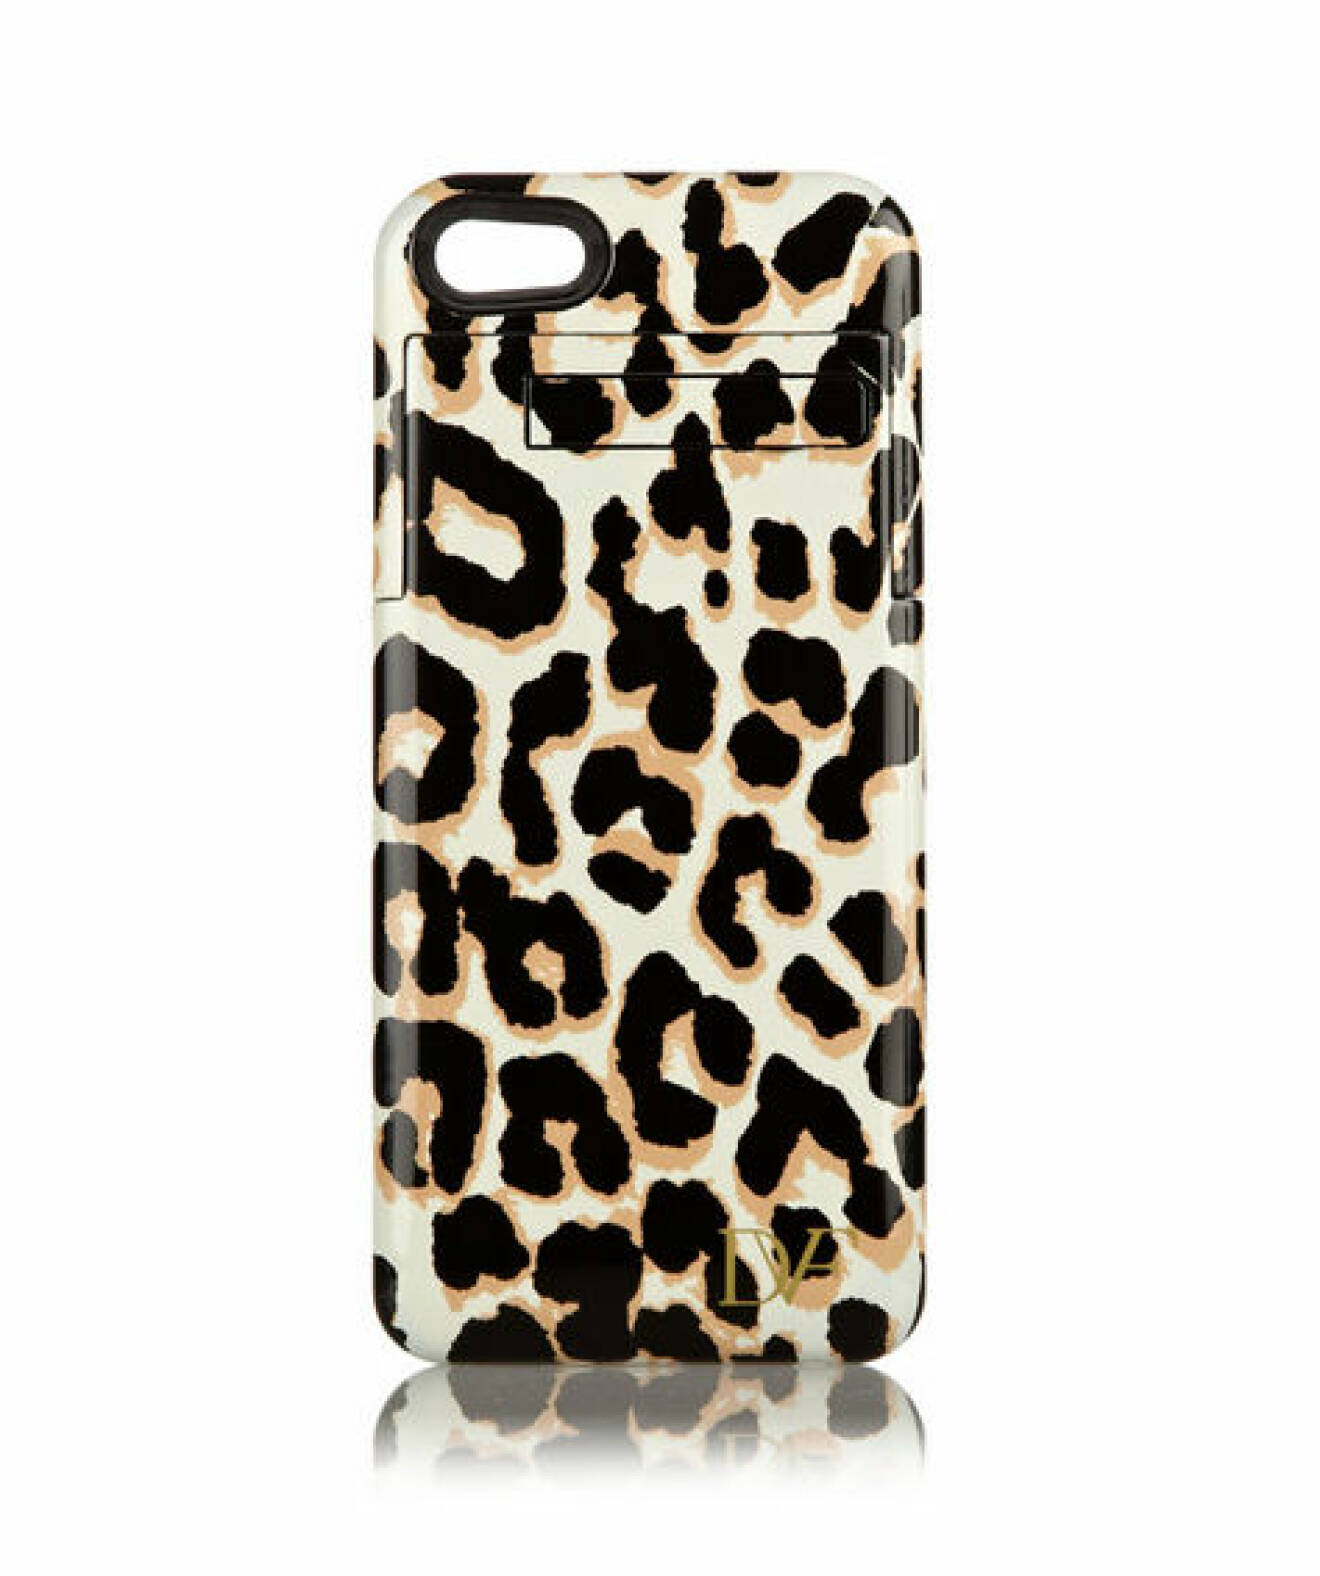 Leopardmönstrat skals om passar Iphone 5, ca 800 kr, Diane von Furstenberg/net-a-porter.com